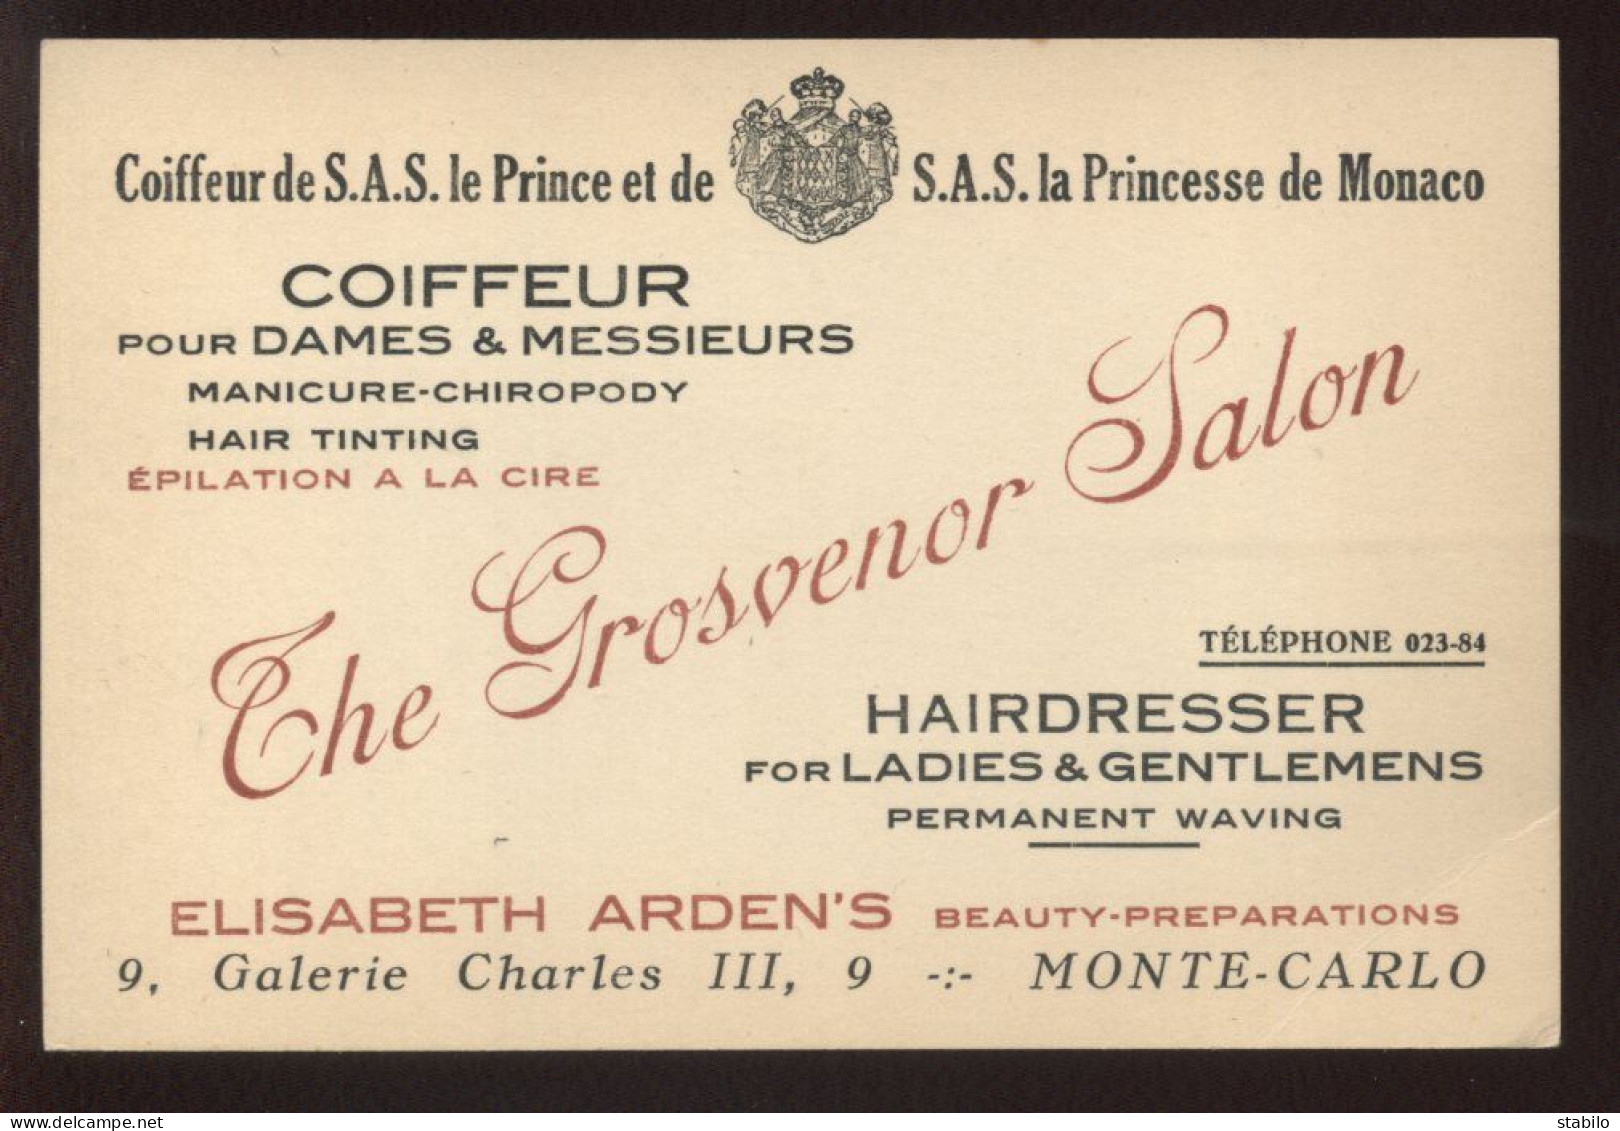 COIFFEUR "THE GROSVENOR SALON"  9 GALERIE CHARLES III, MONTE-CARLO - PRINCIPAUTE DE MONACO - Cartes De Visite